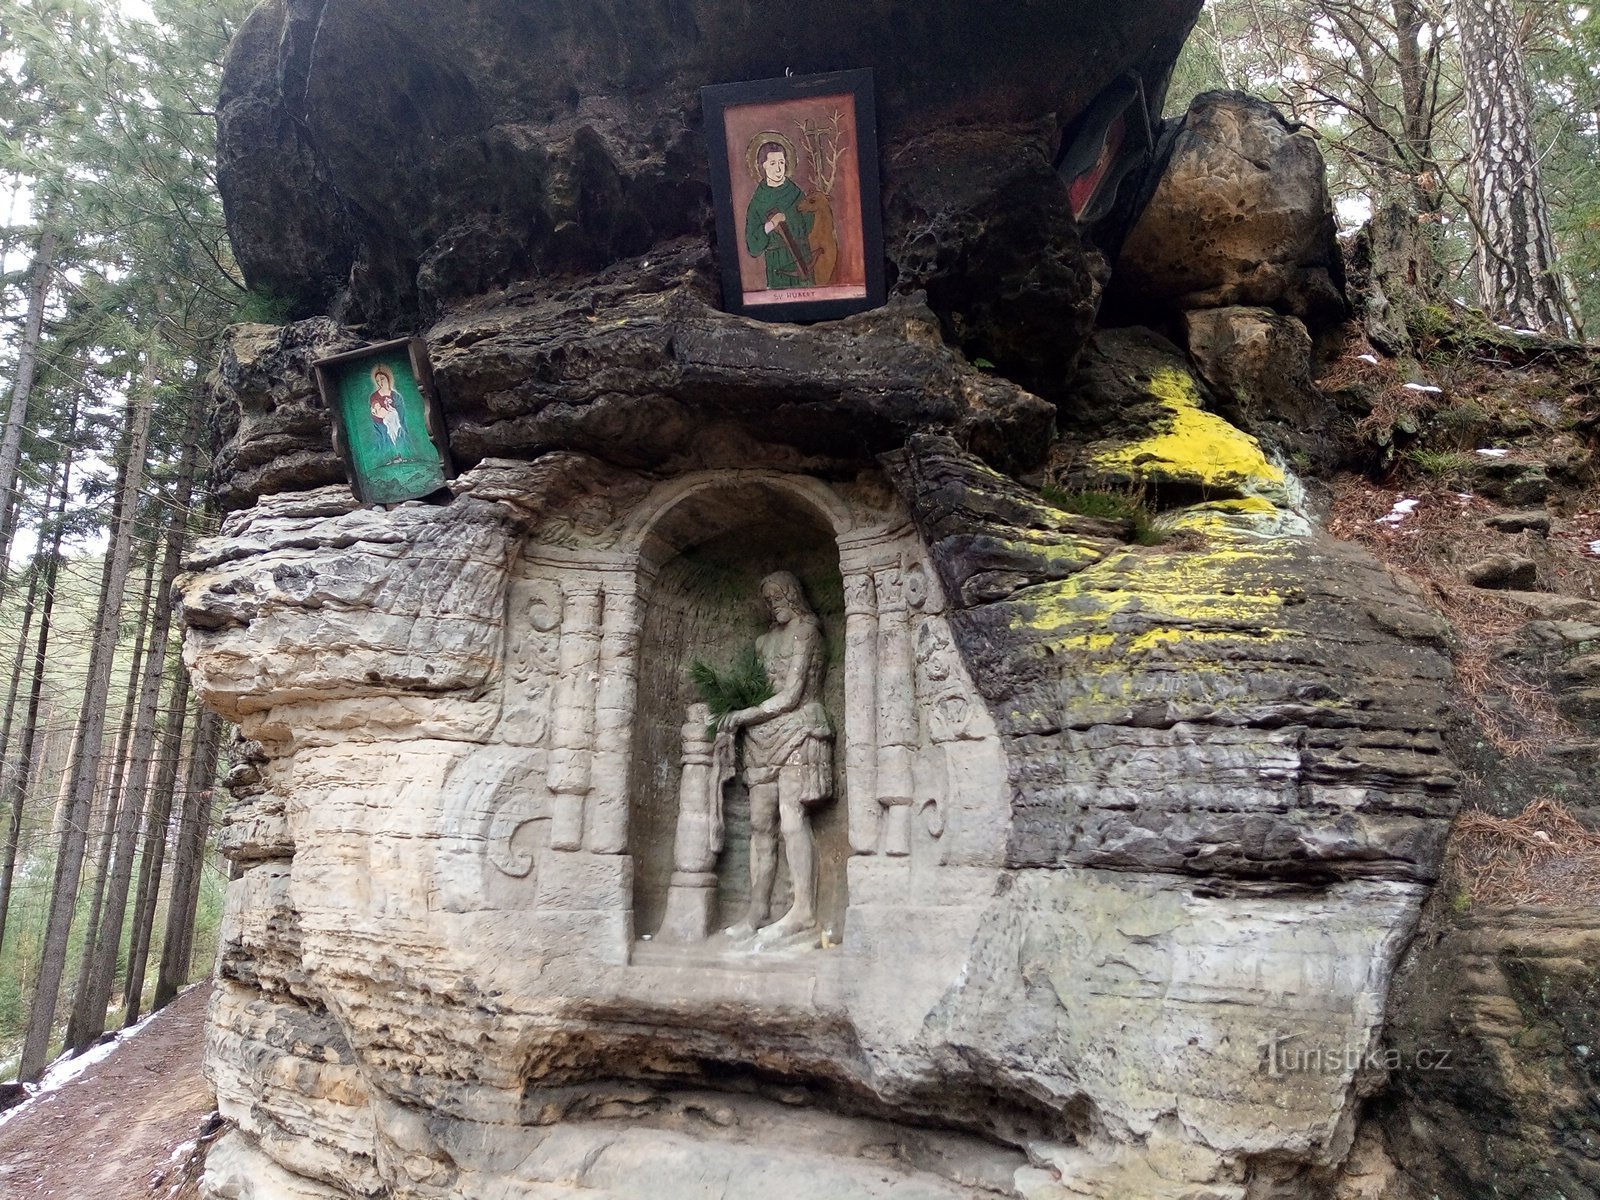 ανάγλυφο βράχου στην κοιλάδα Samoty